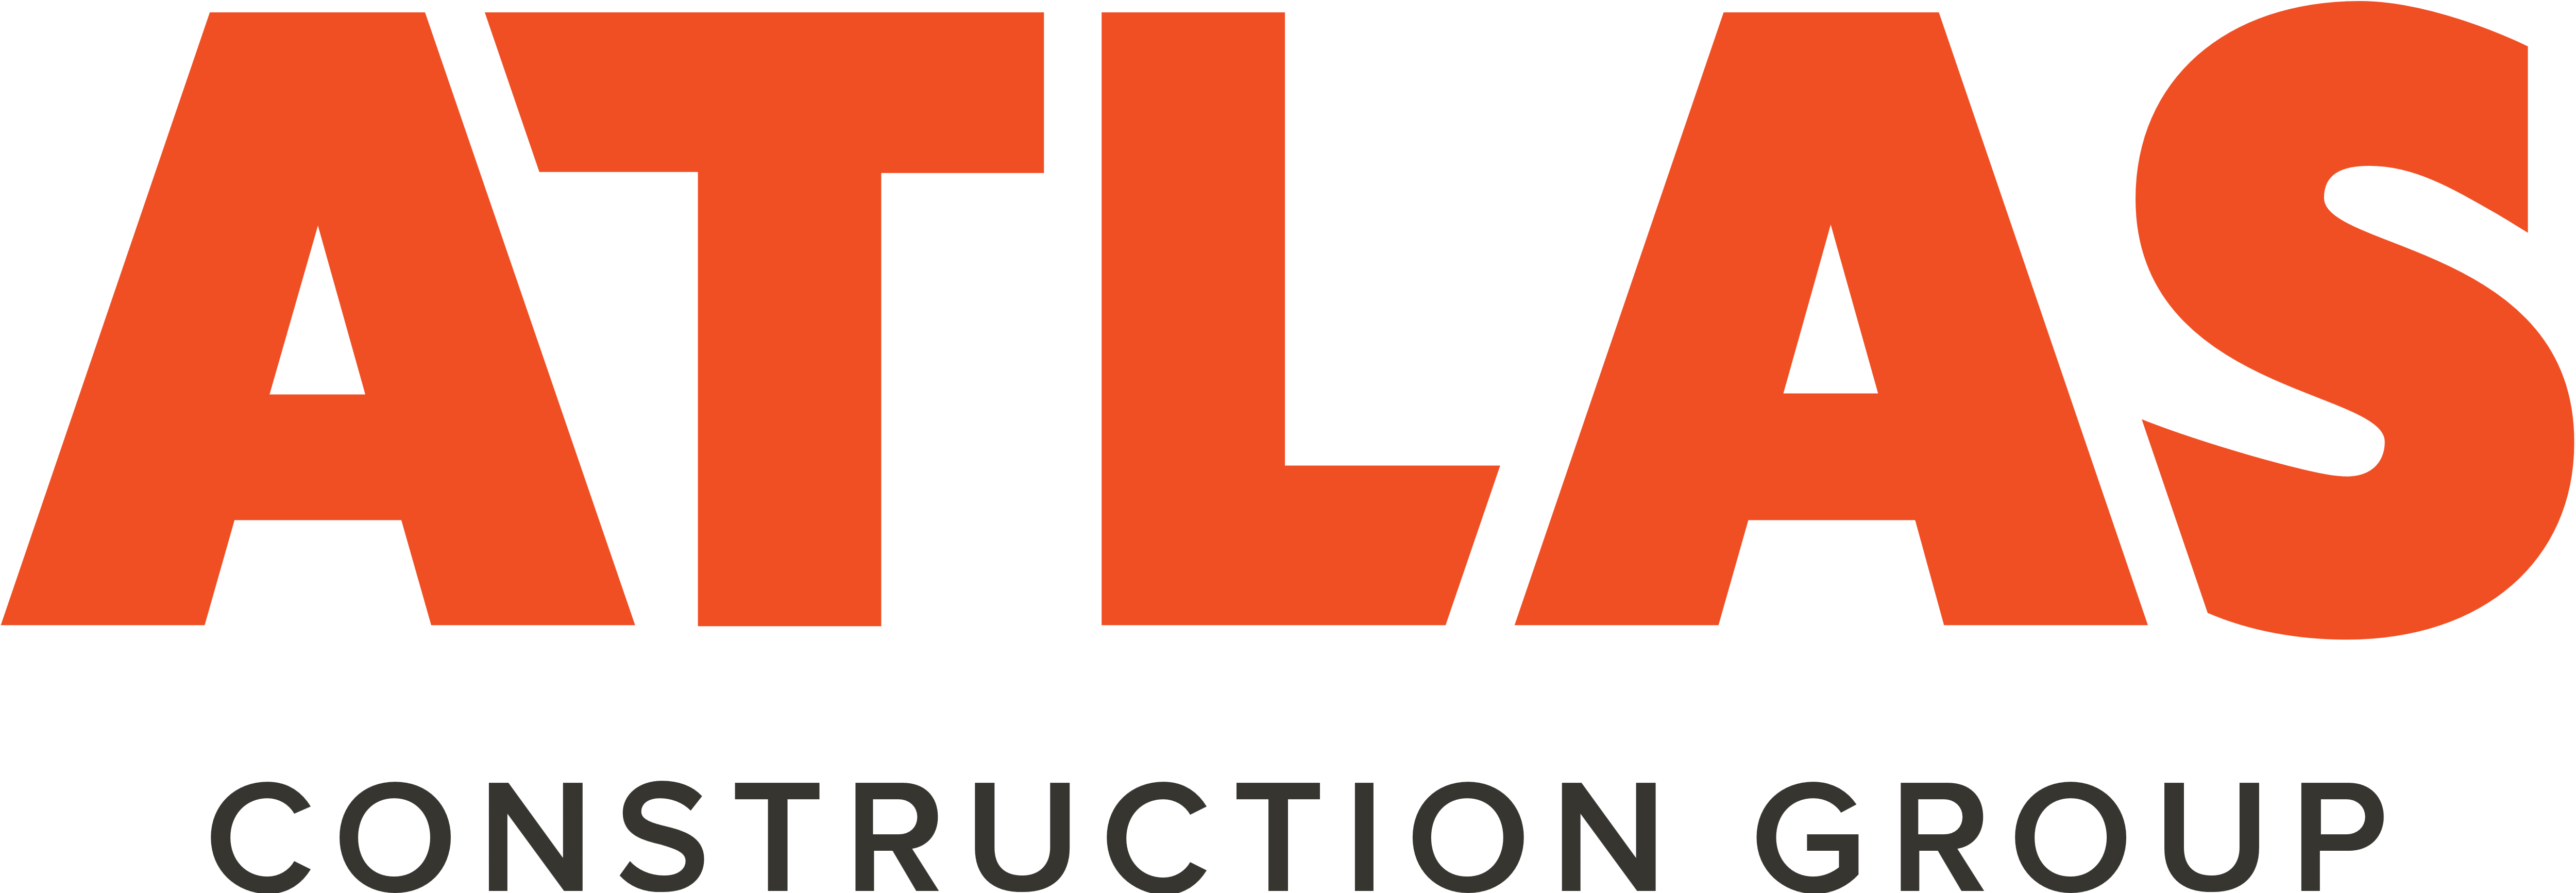 Orange Atlas Logo - Atlas Logos